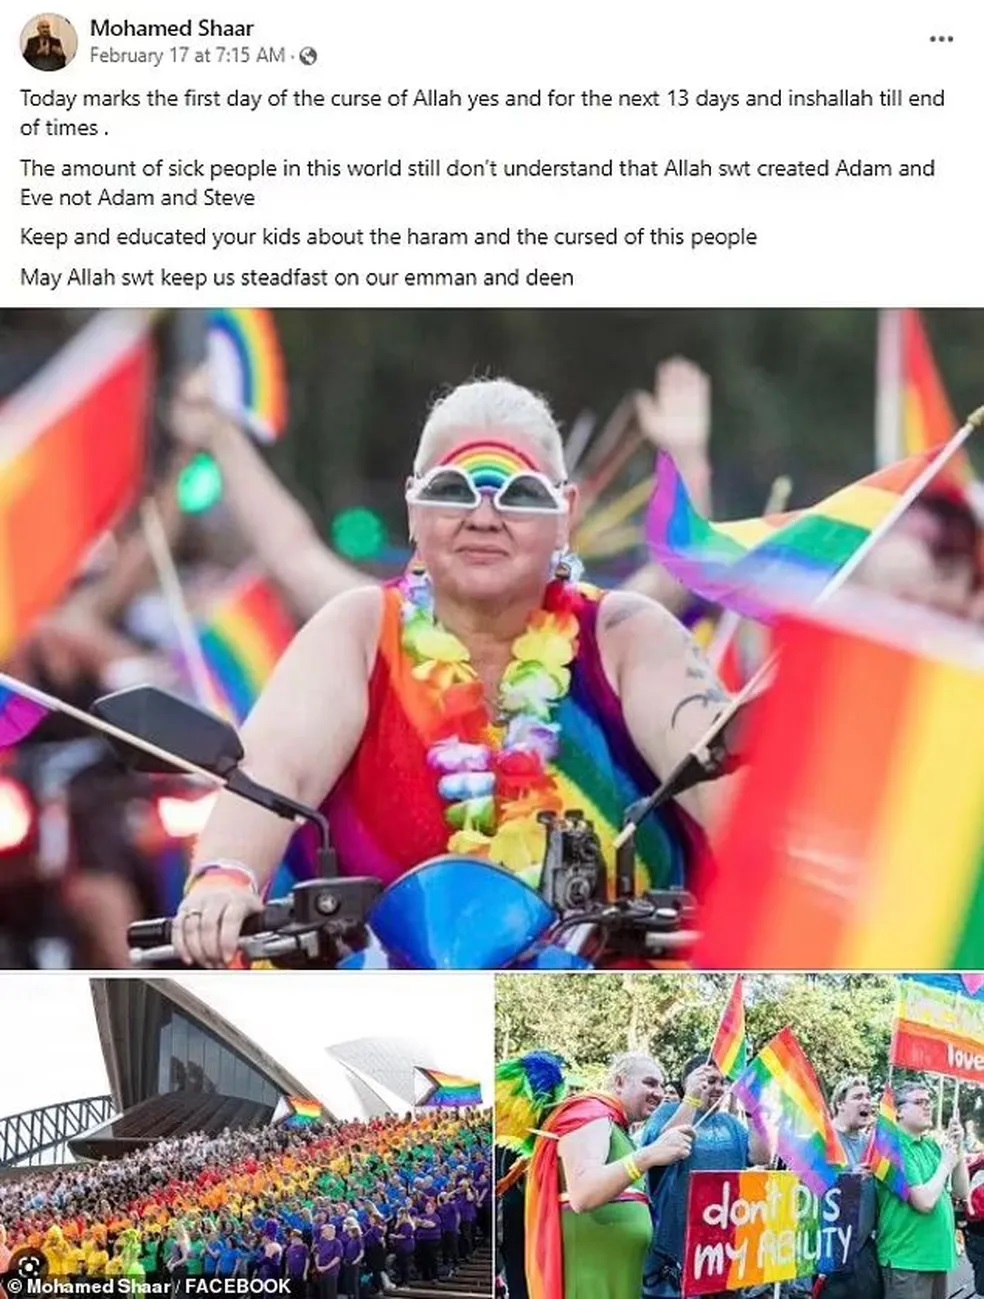 Post do mulçamano Mohamed Shaar criticando a Parada do Orgulho de Sydney, na Austrália. Foto: Reprodução/Facebook 07.03.2023